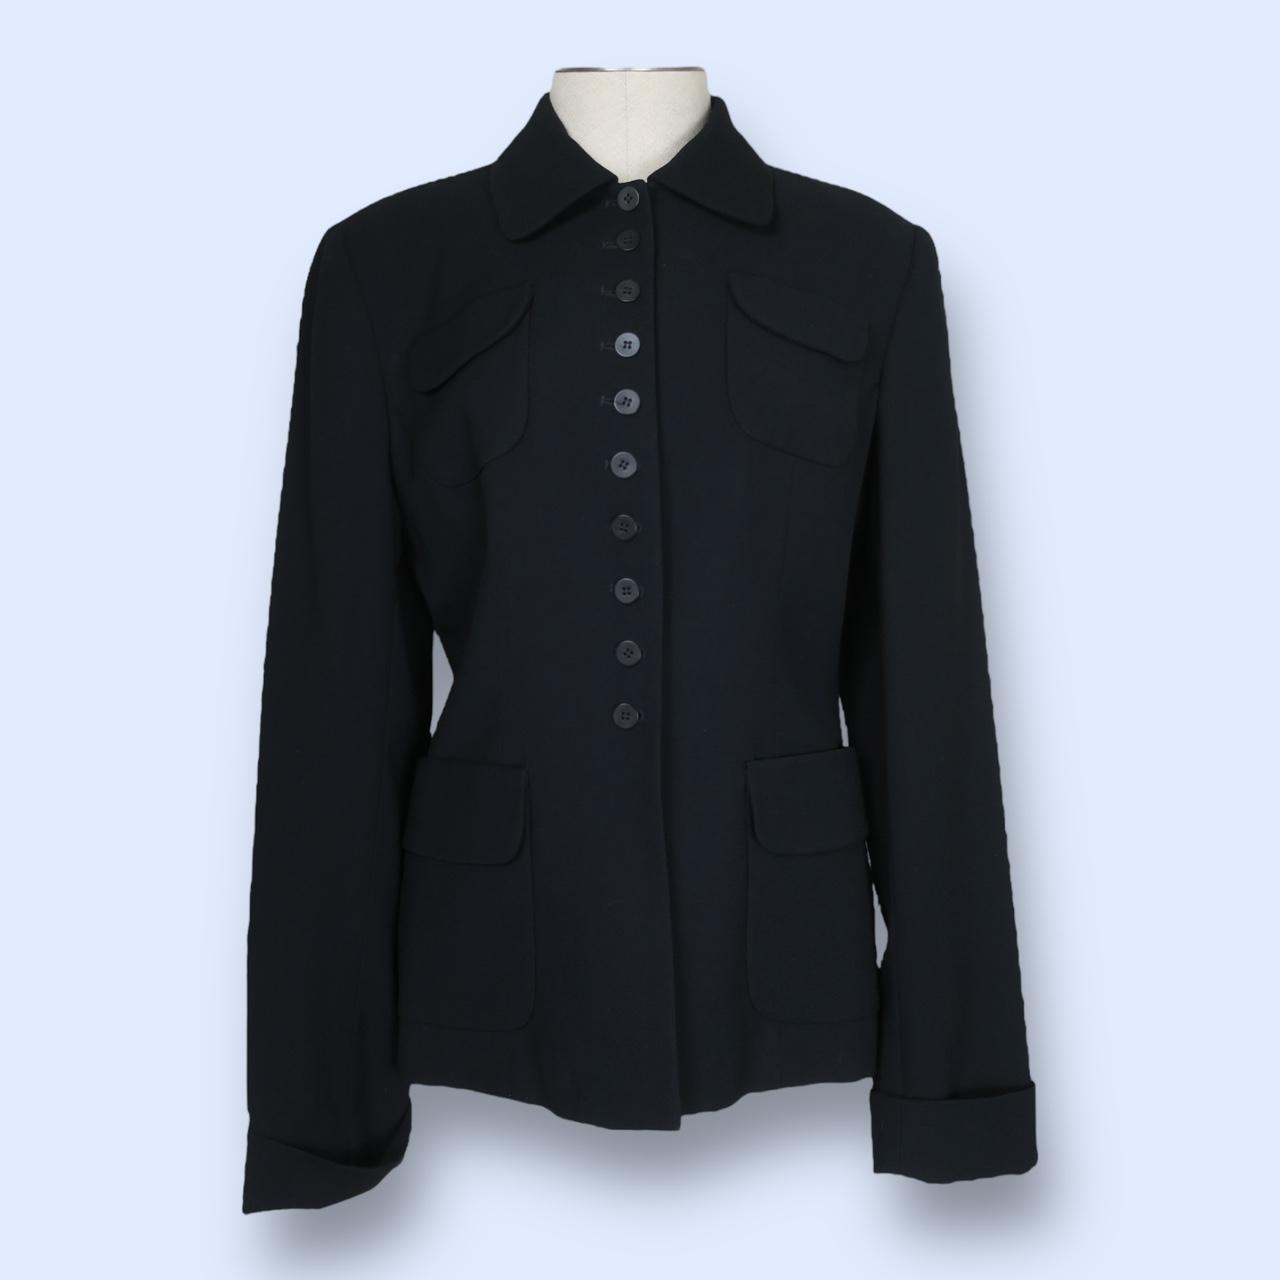 Parallel Sleek Button Up Blazer-S/M Brand: Parallel... - Depop